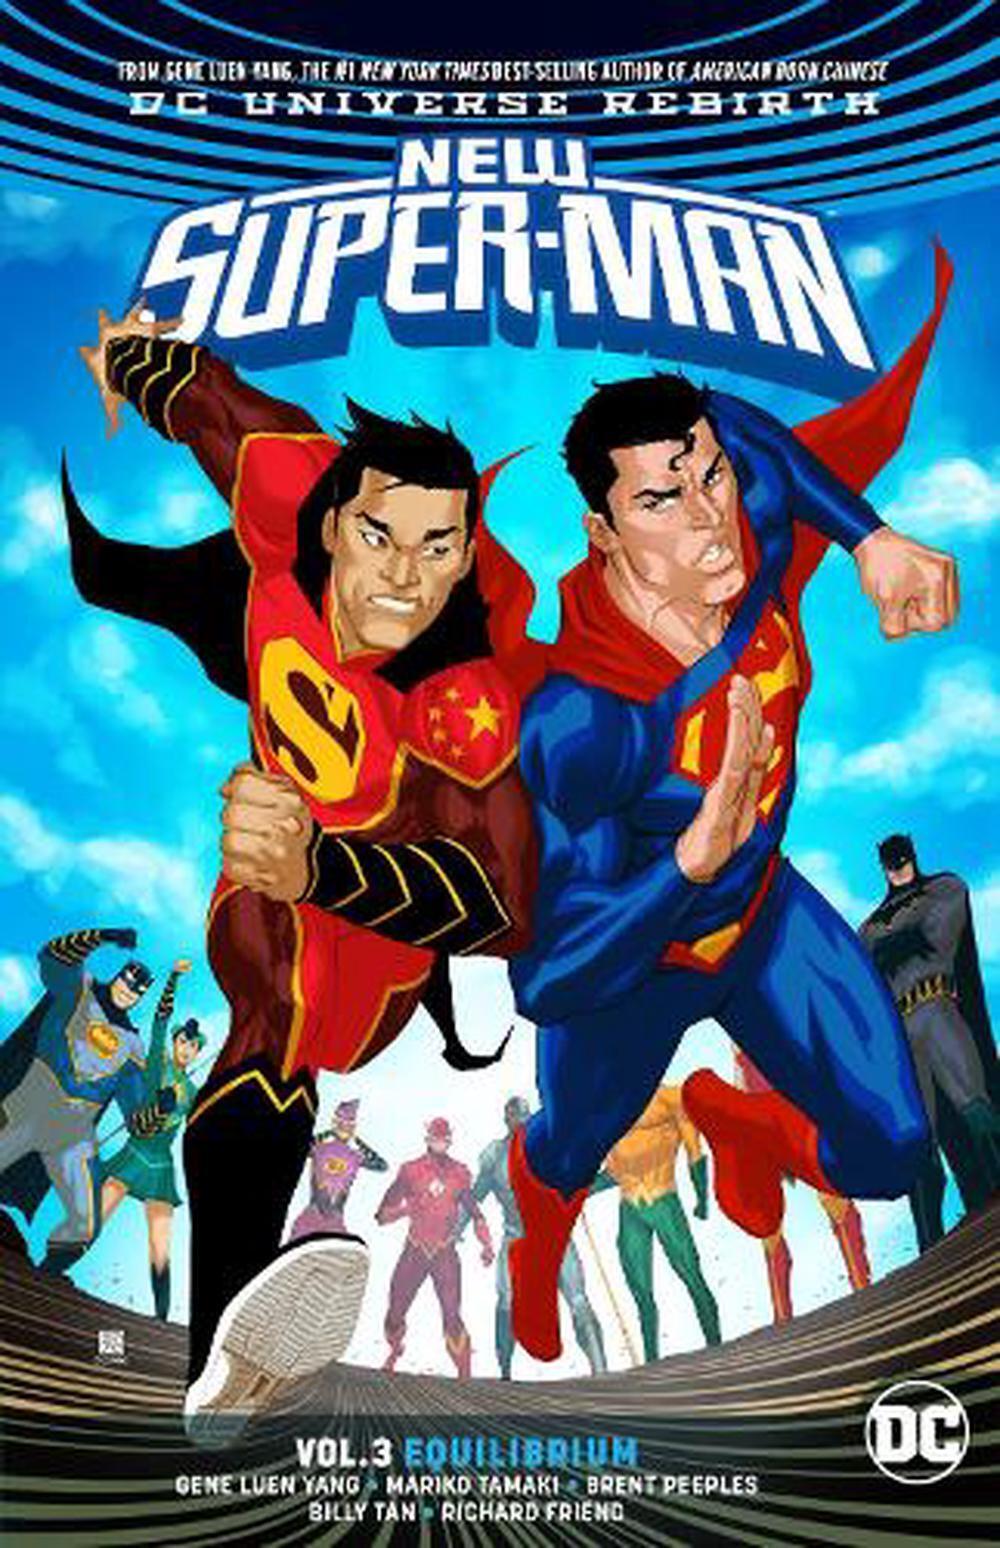 New Super-Man Volume 3: Equilibrium by Gene Leun Yang (English) Paperback Book